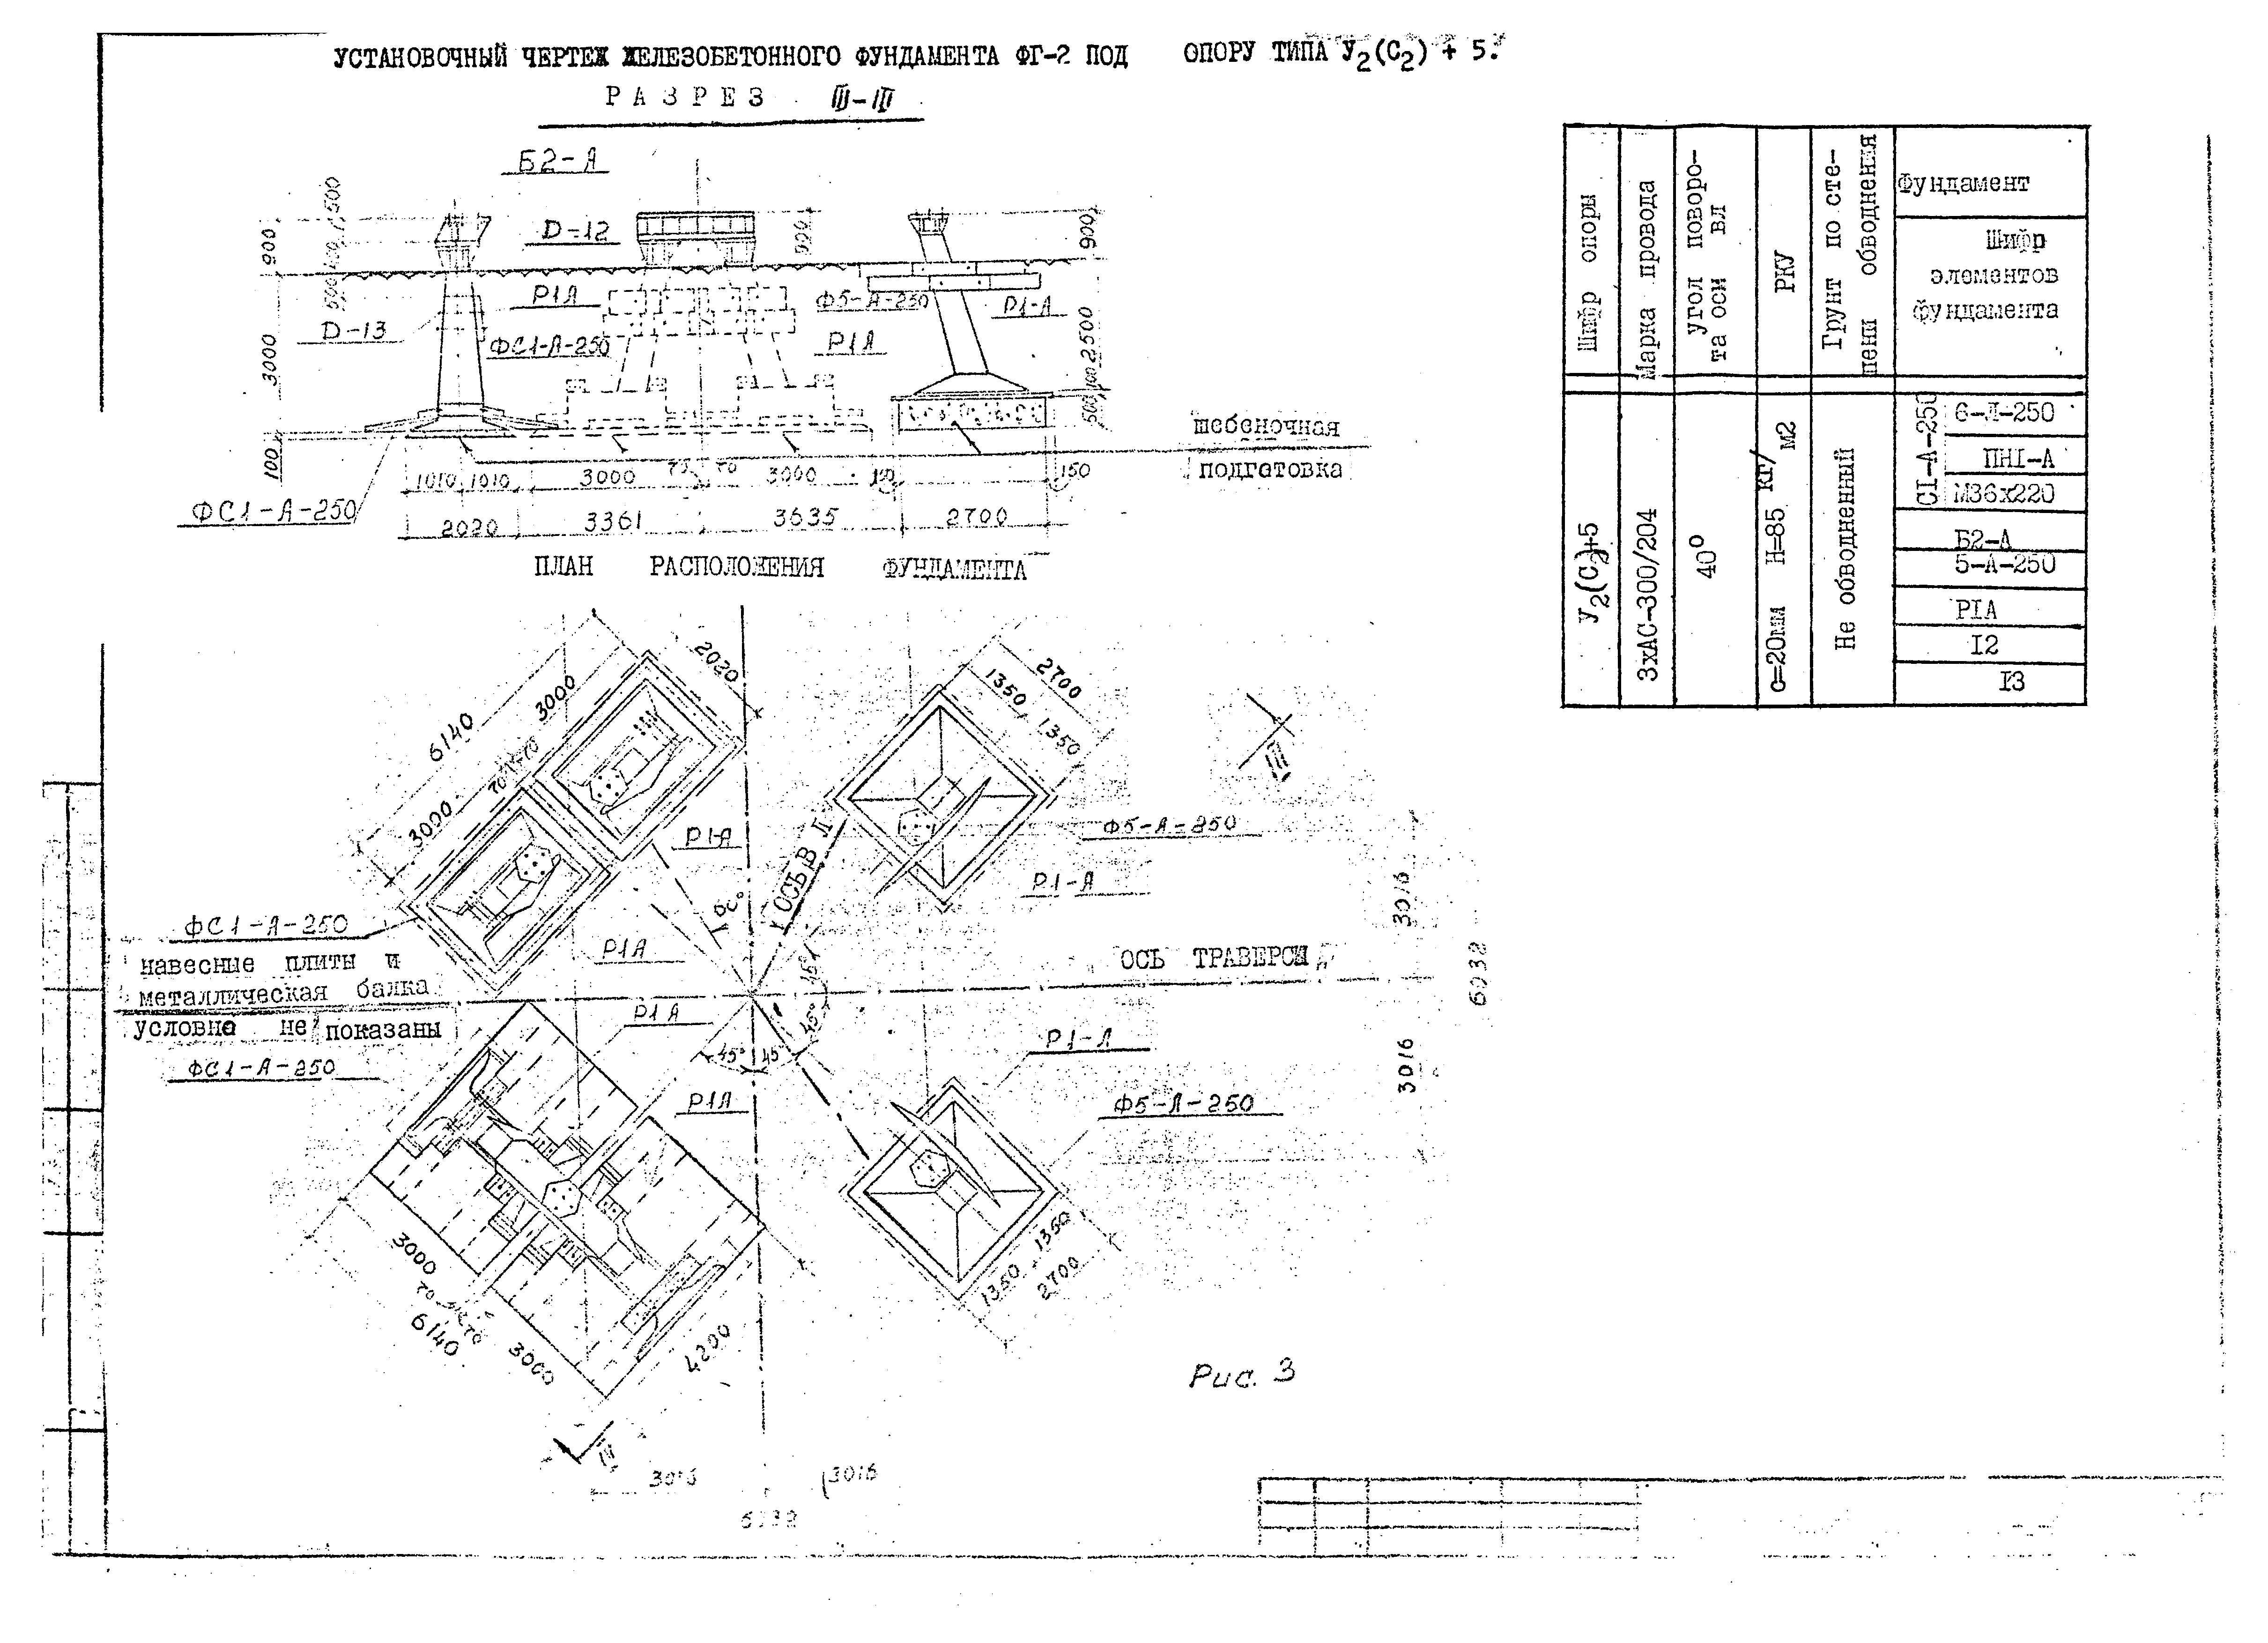 Технологическая карта К-1-24-1